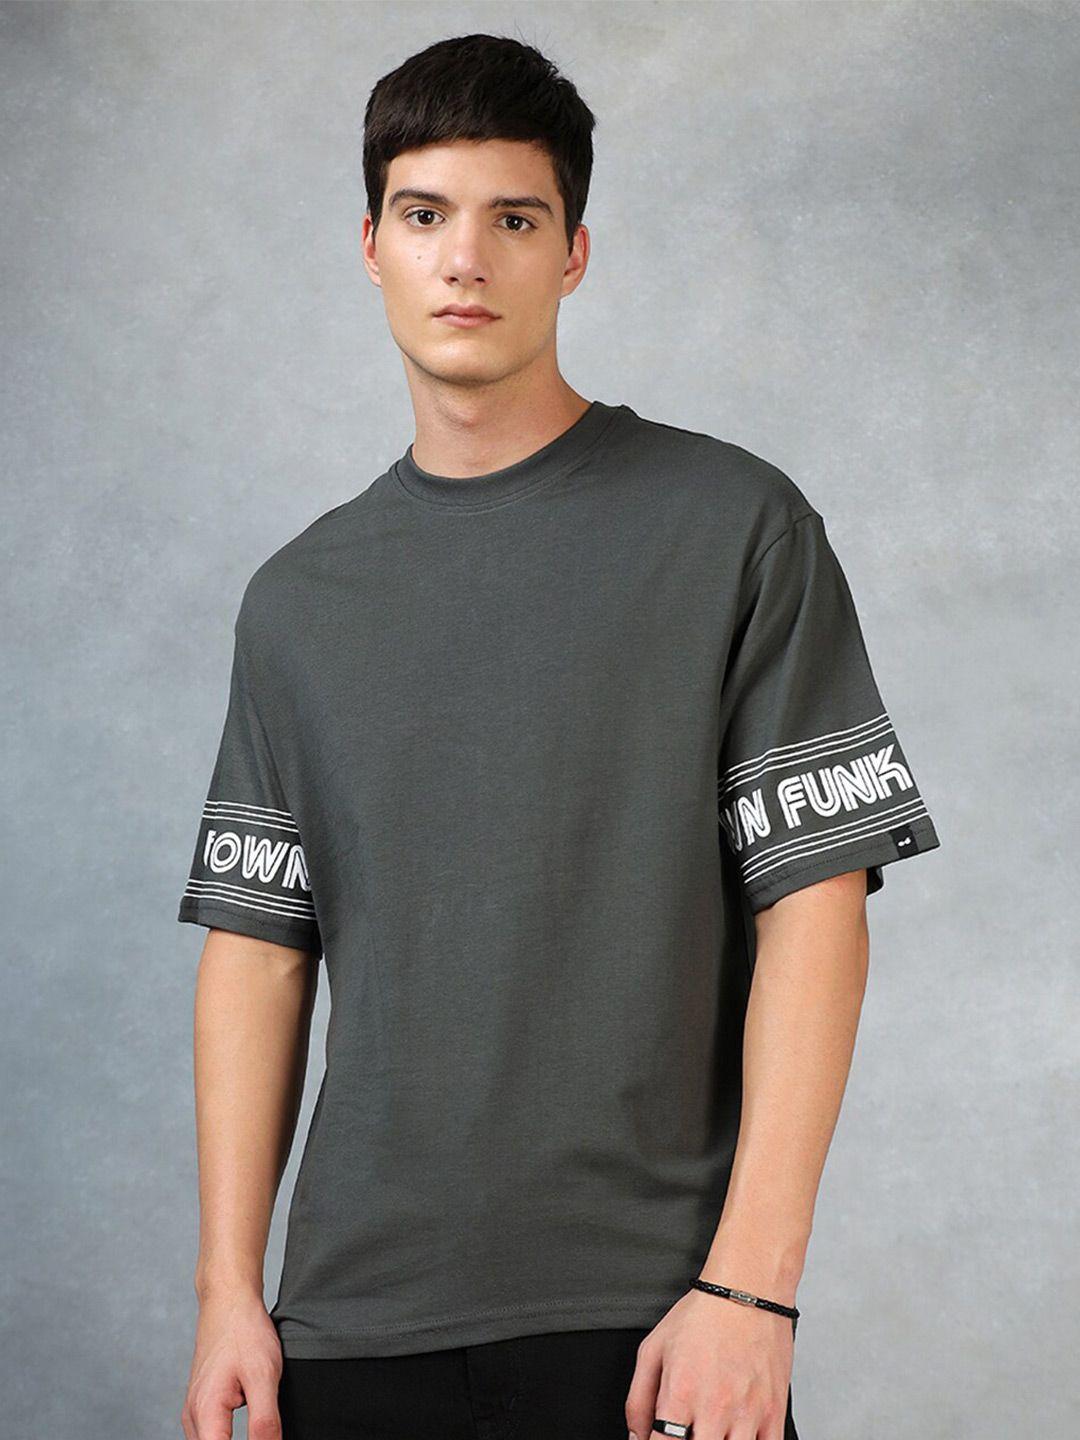 bewakoof-grey-typography-printed-drop-shoulder-oversized-cotton-t-shirt